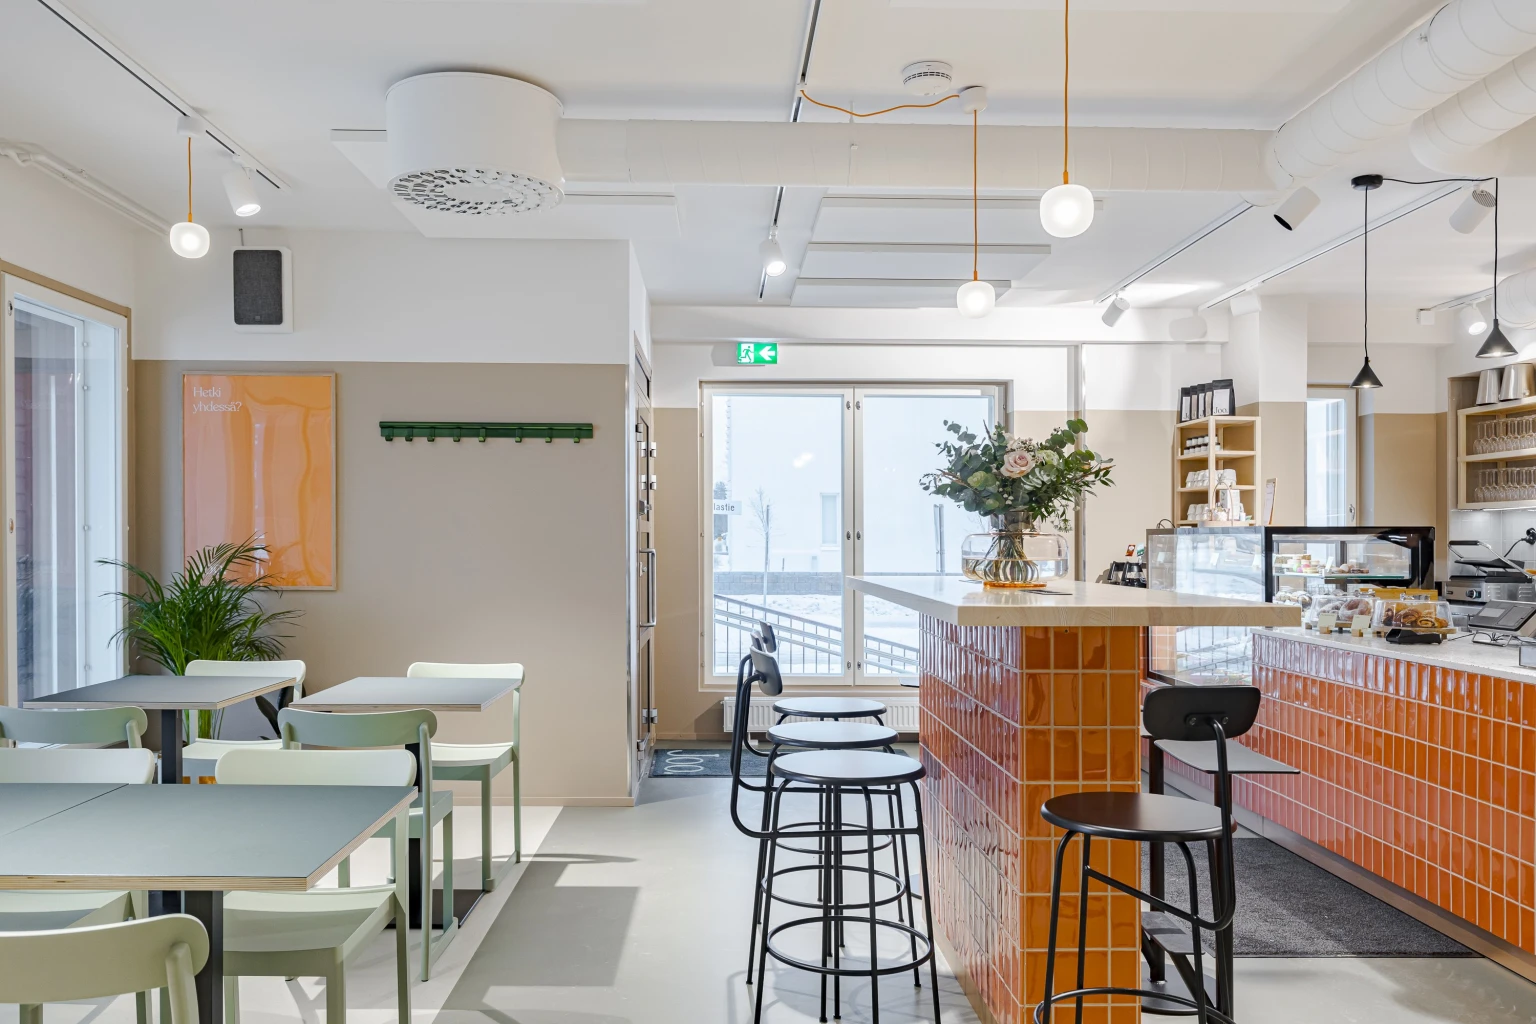 The Joo Hetki café is now open in Toppilansalmi, Oulu